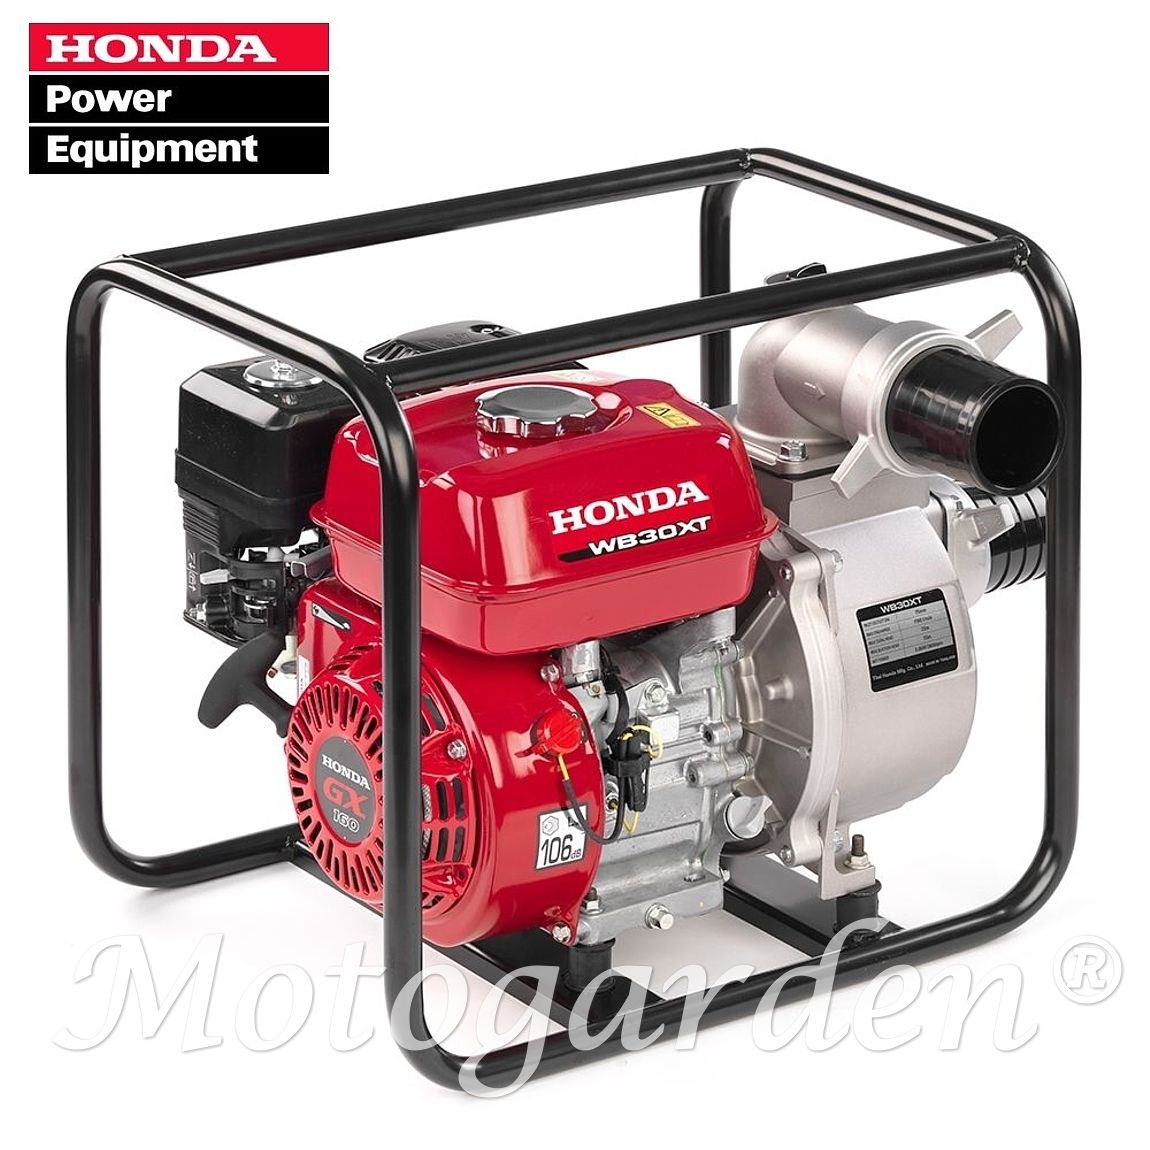 Gruppo pompa Honda, super professionale autoadescante in grado di esprimere massime prestazioni.